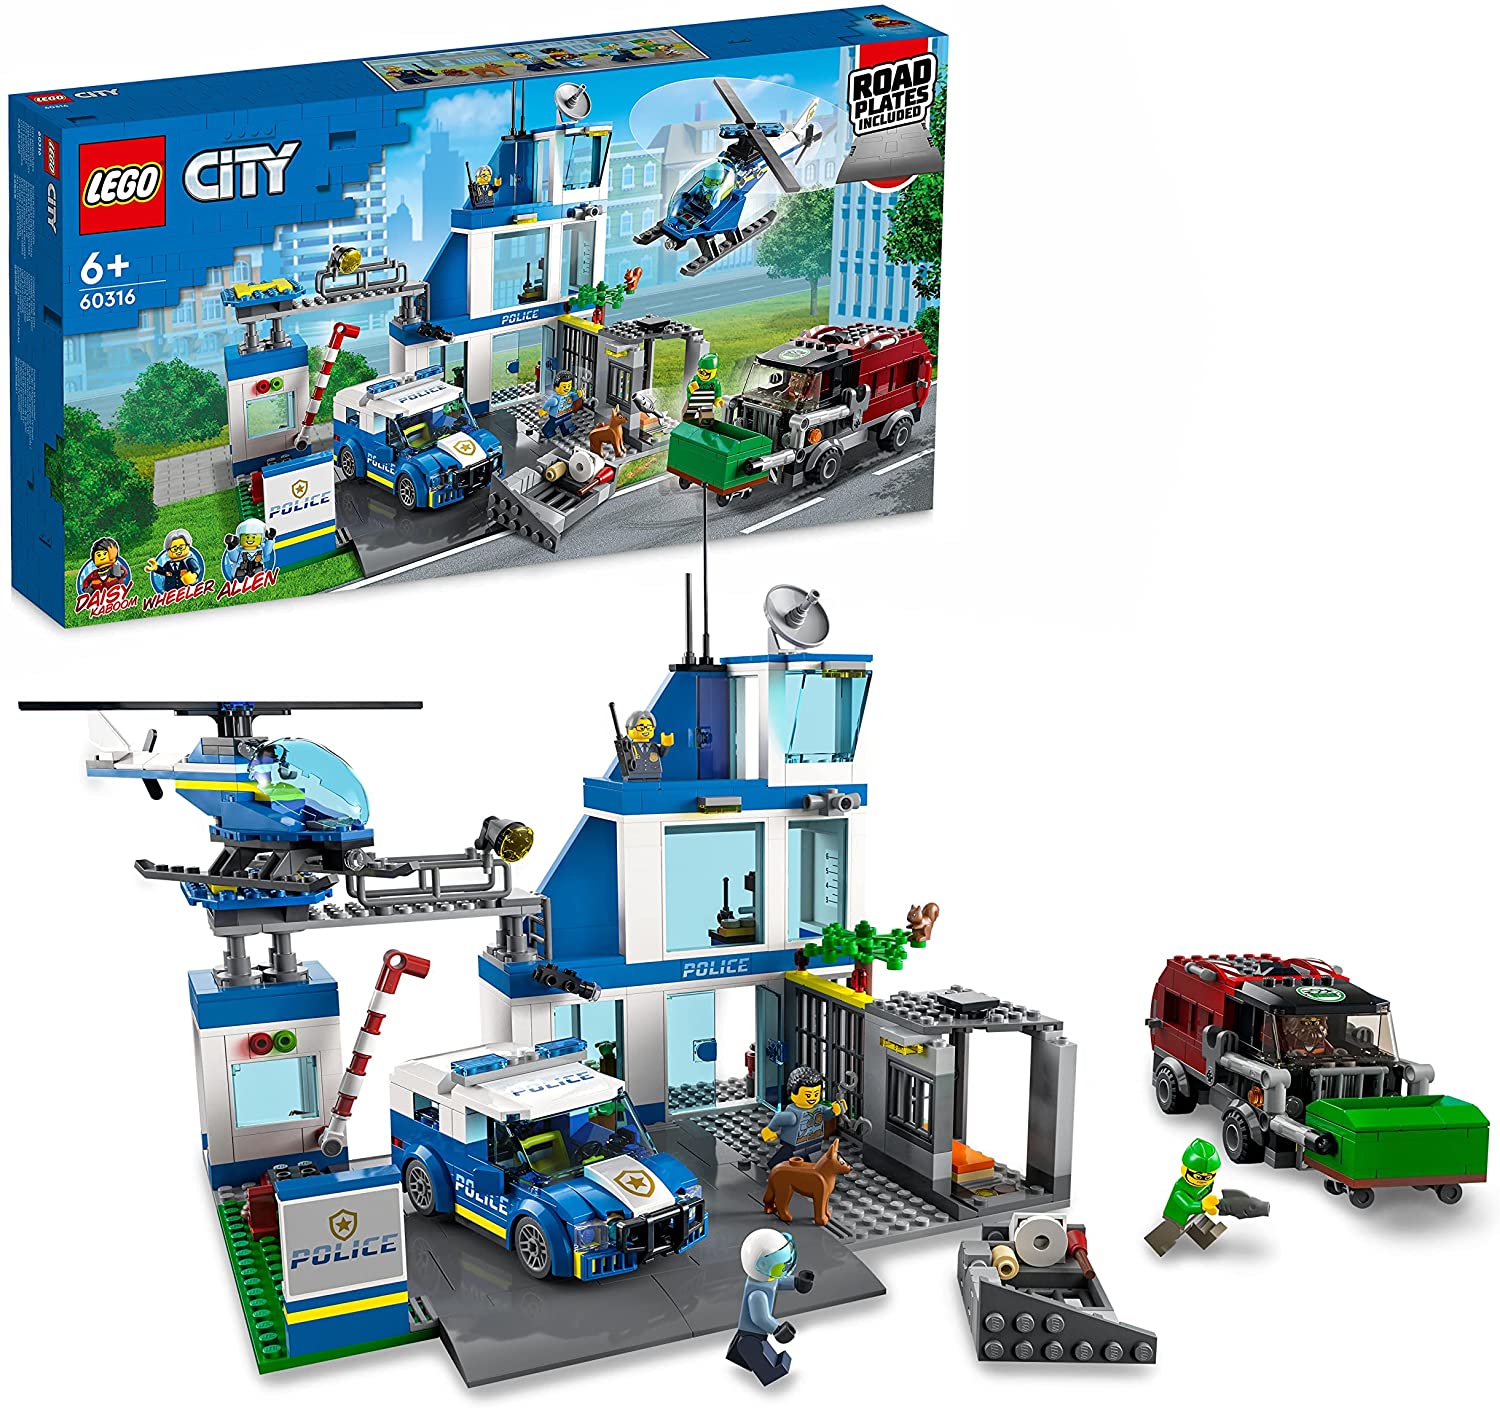 LEGO 60316 STAZIONE DI POLIZIA CITY